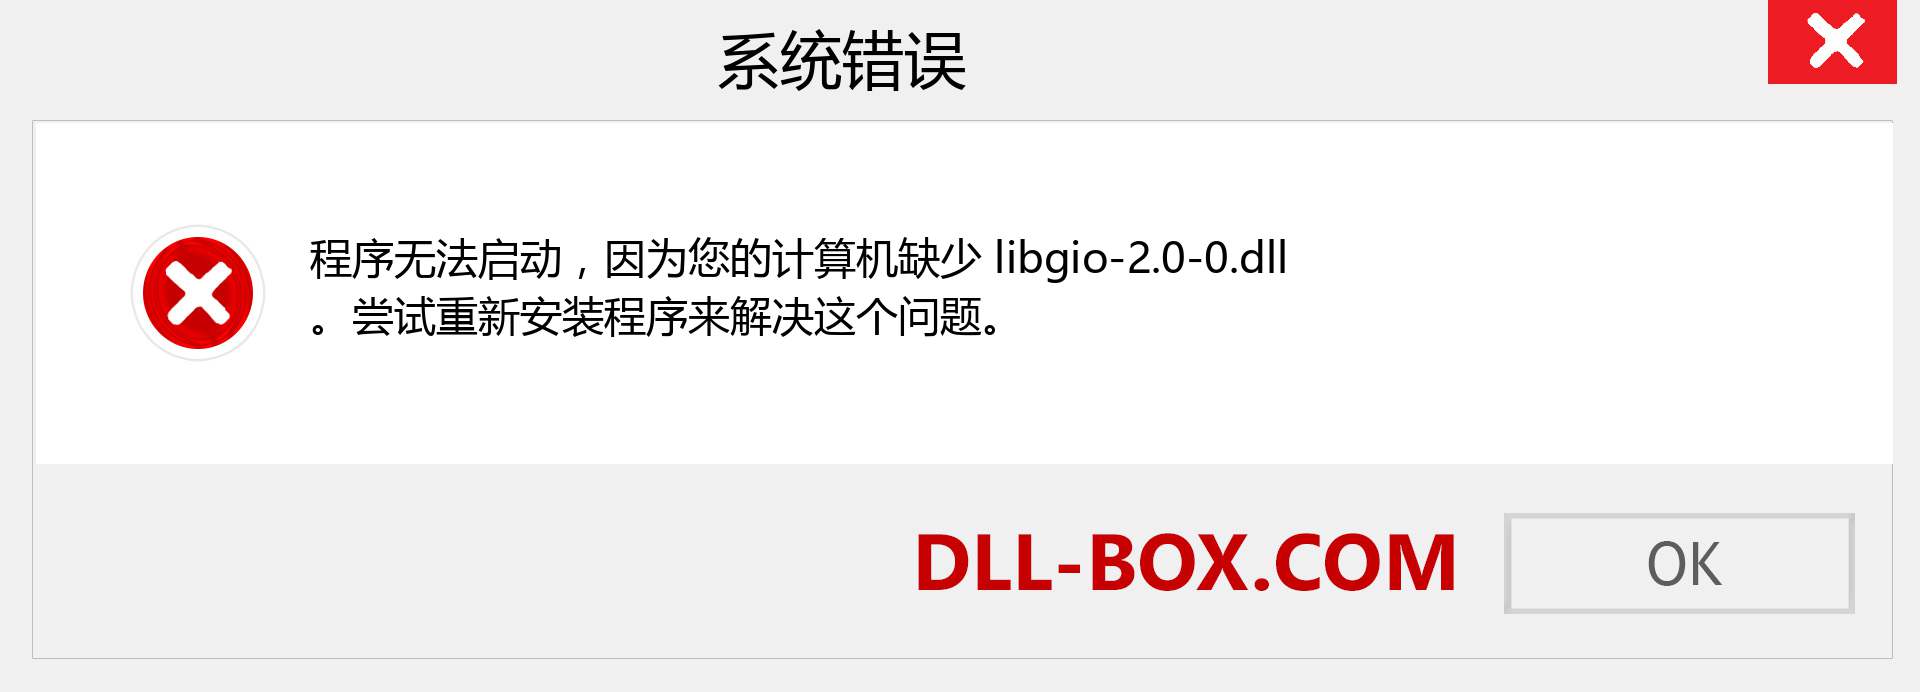 libgio-2.0-0.dll 文件丢失？。 适用于 Windows 7、8、10 的下载 - 修复 Windows、照片、图像上的 libgio-2.0-0 dll 丢失错误